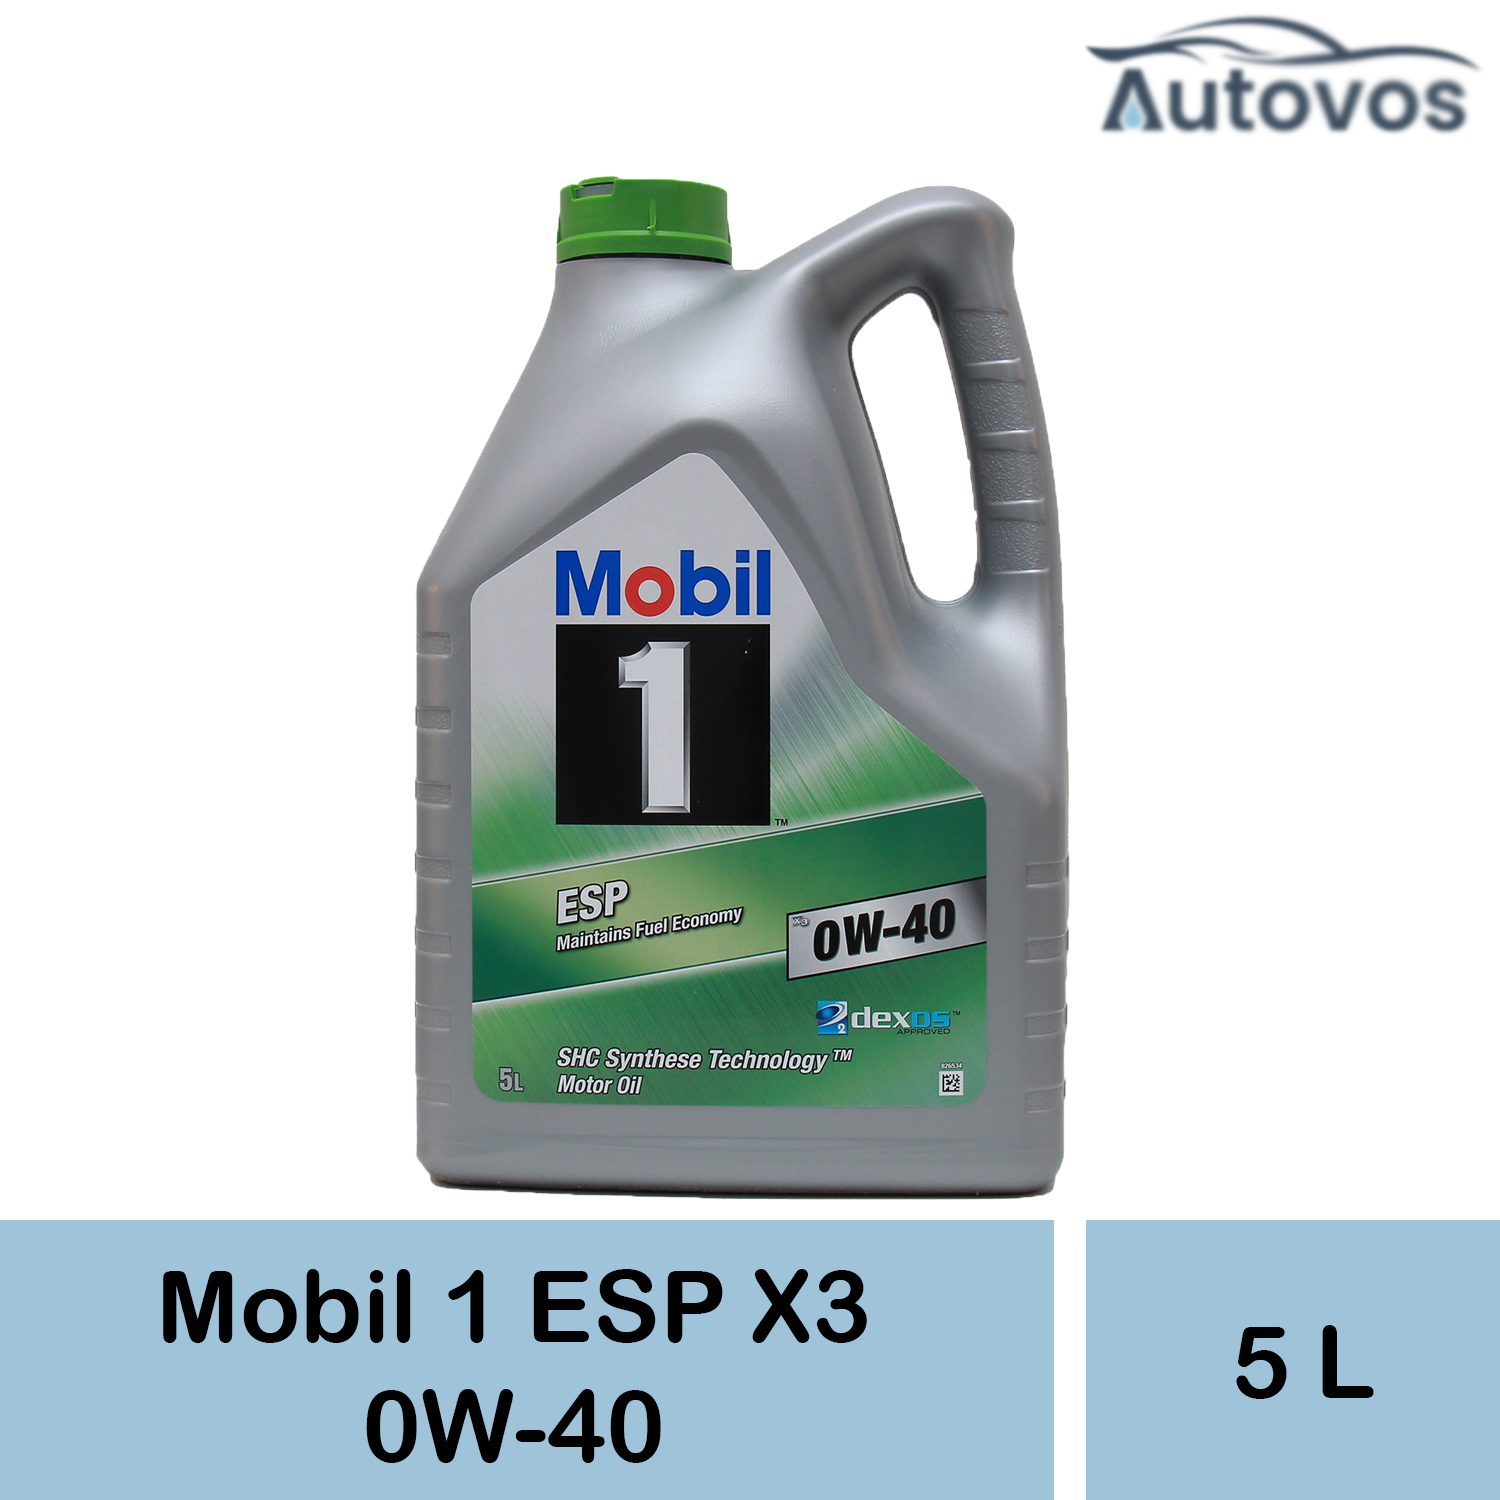 Mobil 1 ESP X3 0W-40 5 Liter